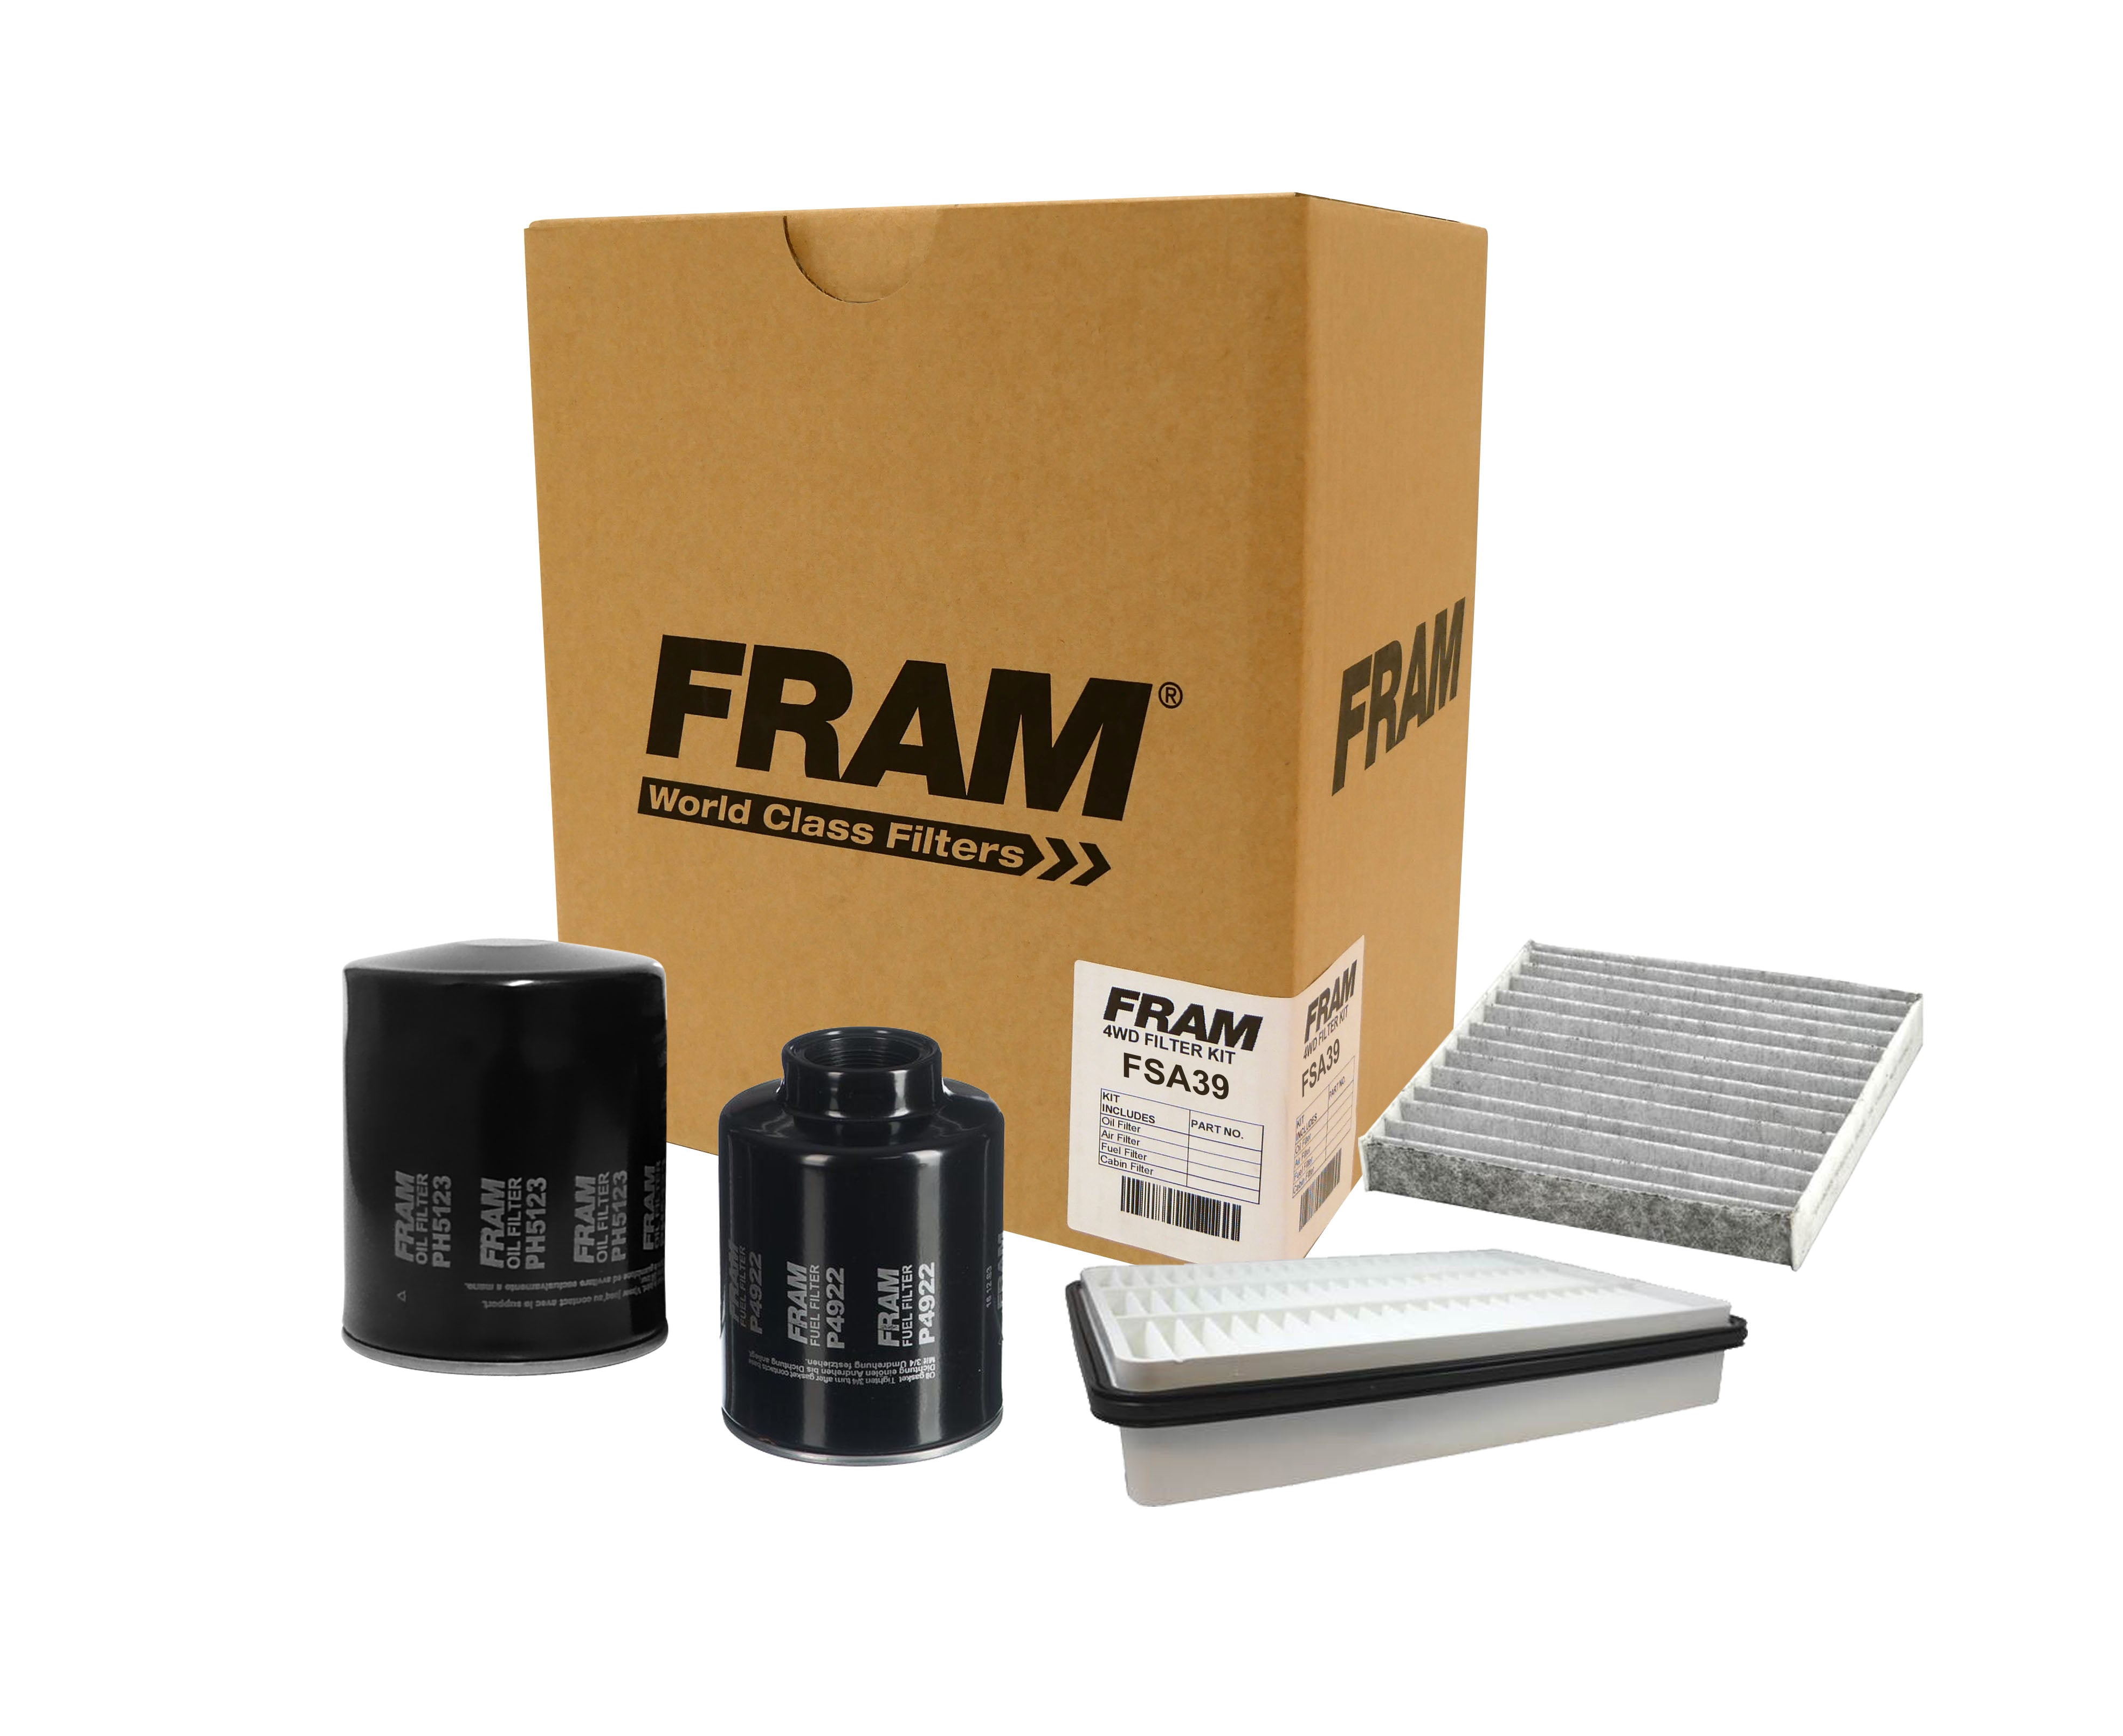 FRAM 4wd Filter Kit for Toyota Landcruiser Prado KZJ120R | FRAM